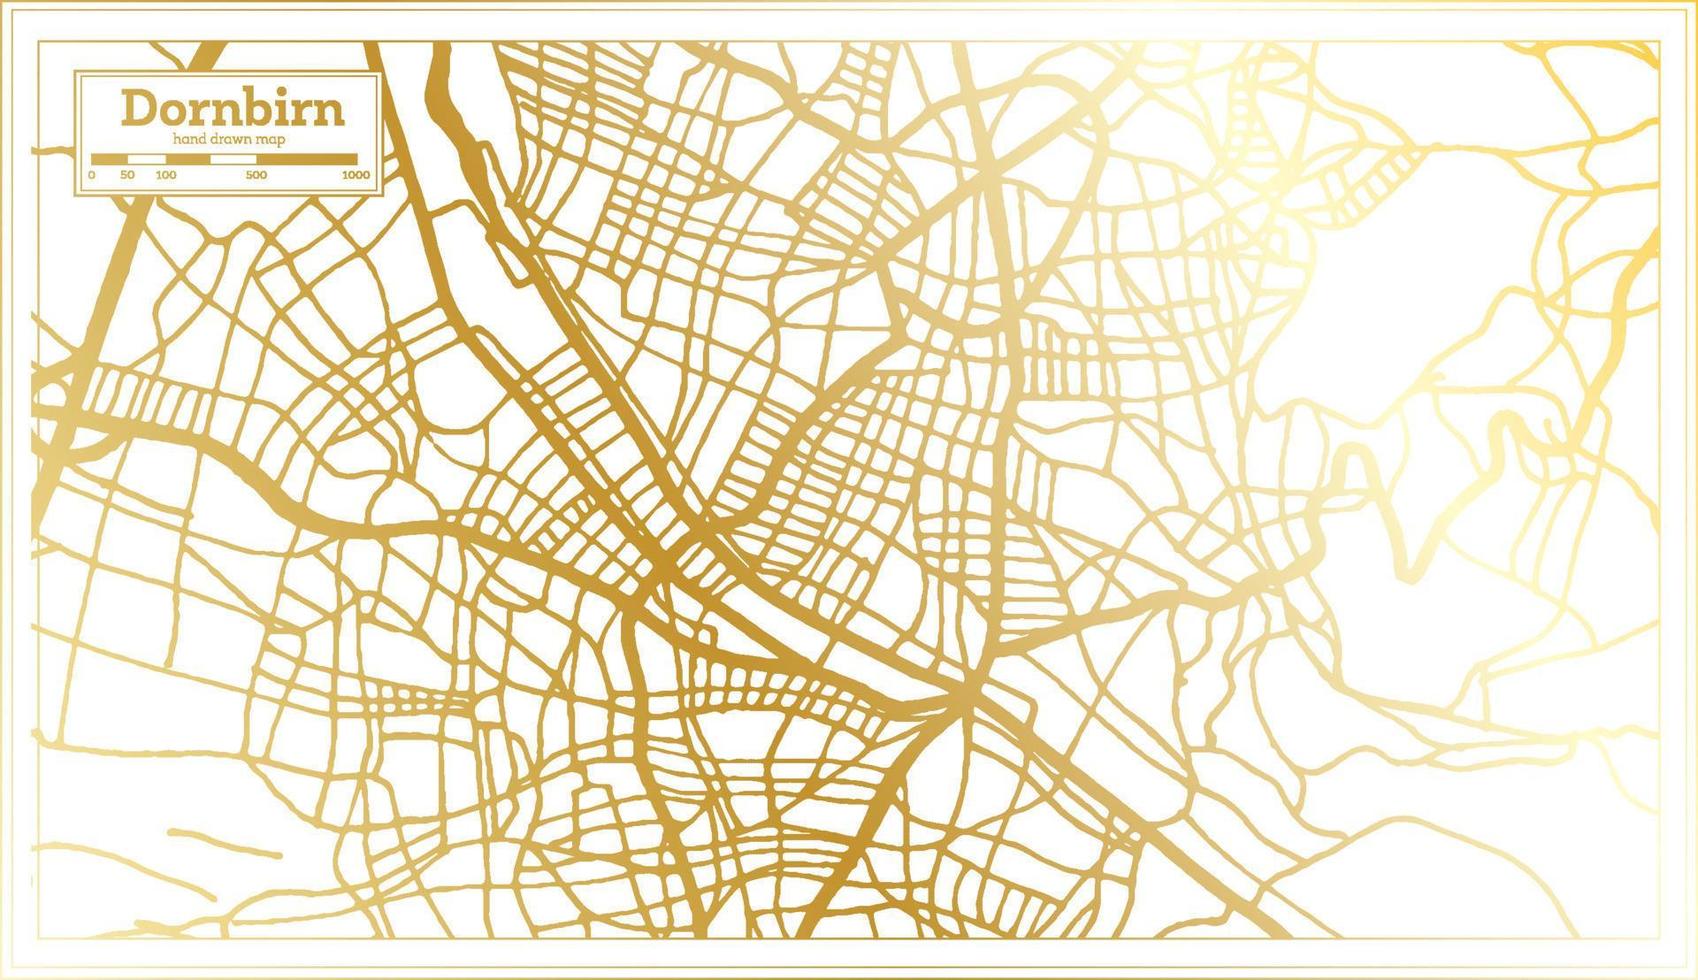 dornbirn Oostenrijk stad kaart in retro stijl in gouden kleur. schets kaart. vector